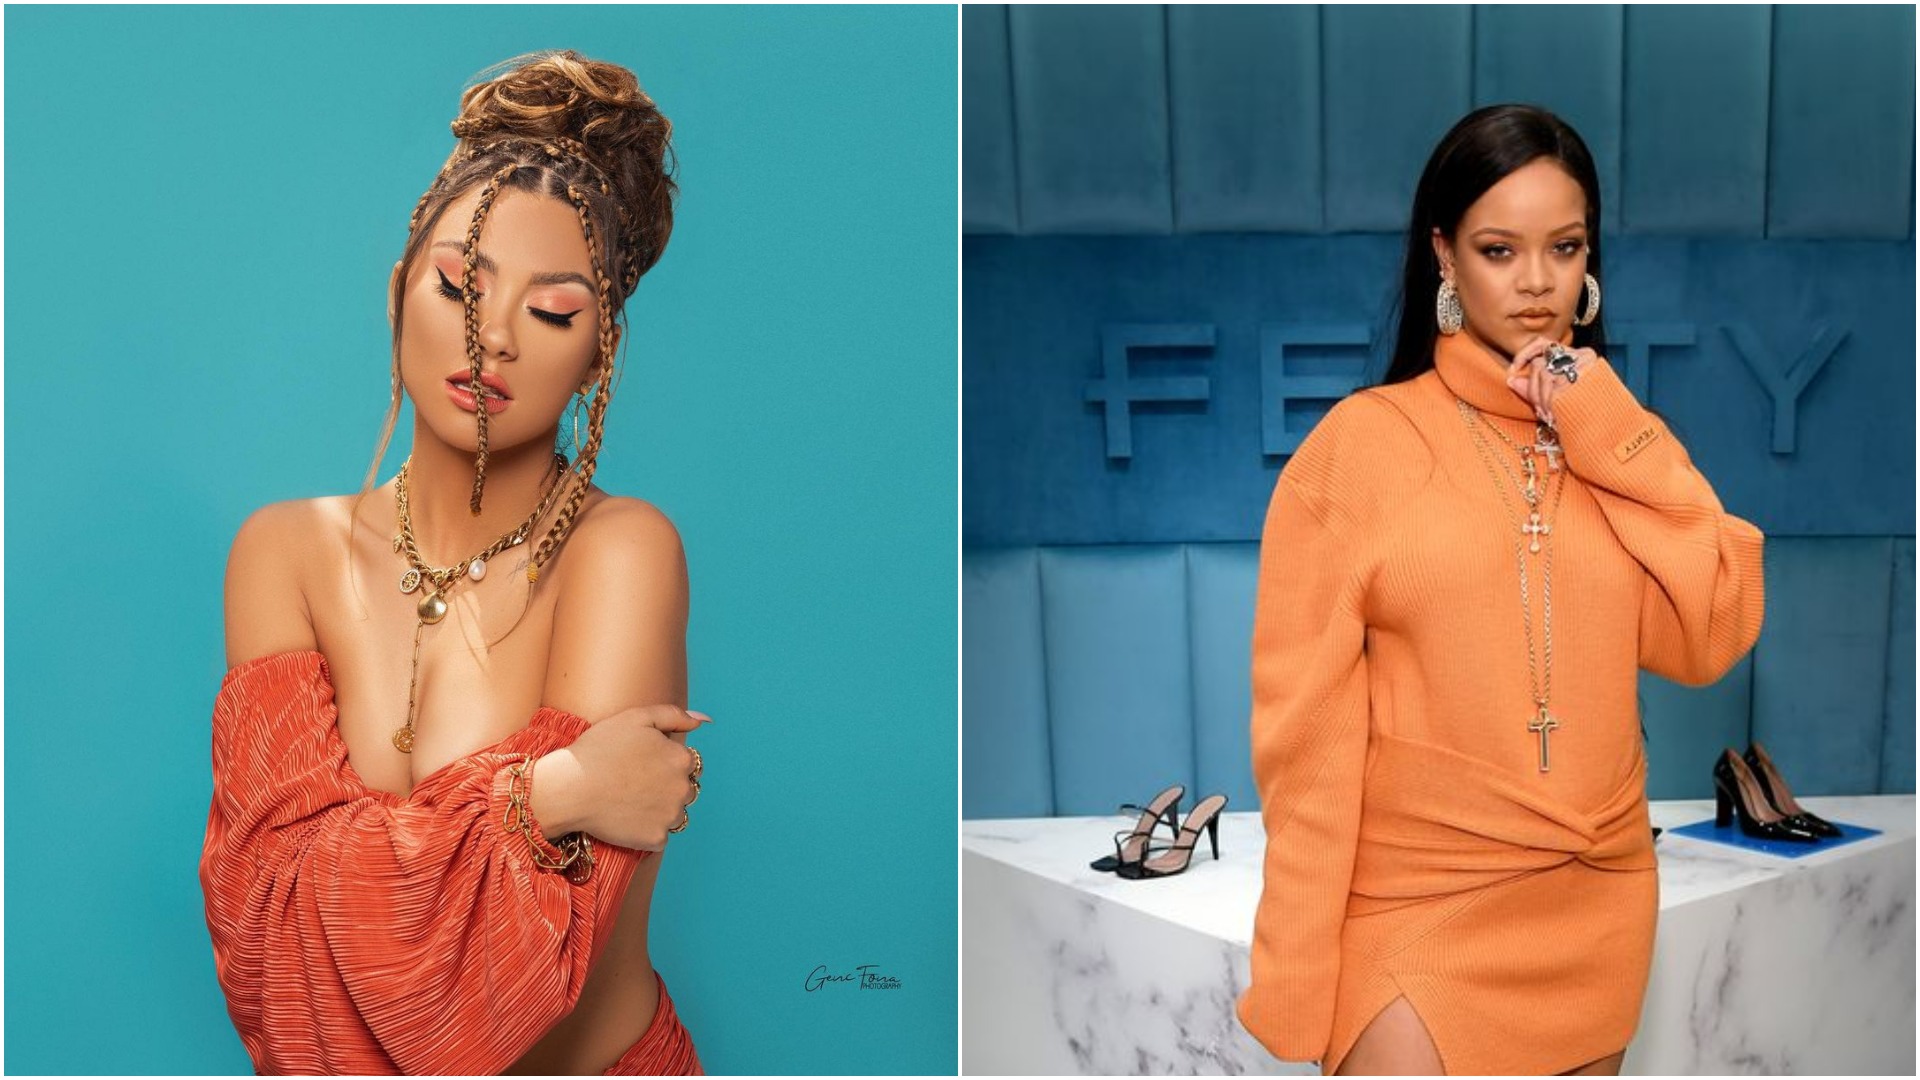 Këngëtarja shqiptare bëhet imazh i markës “Fenty Beauty” të Rihannas